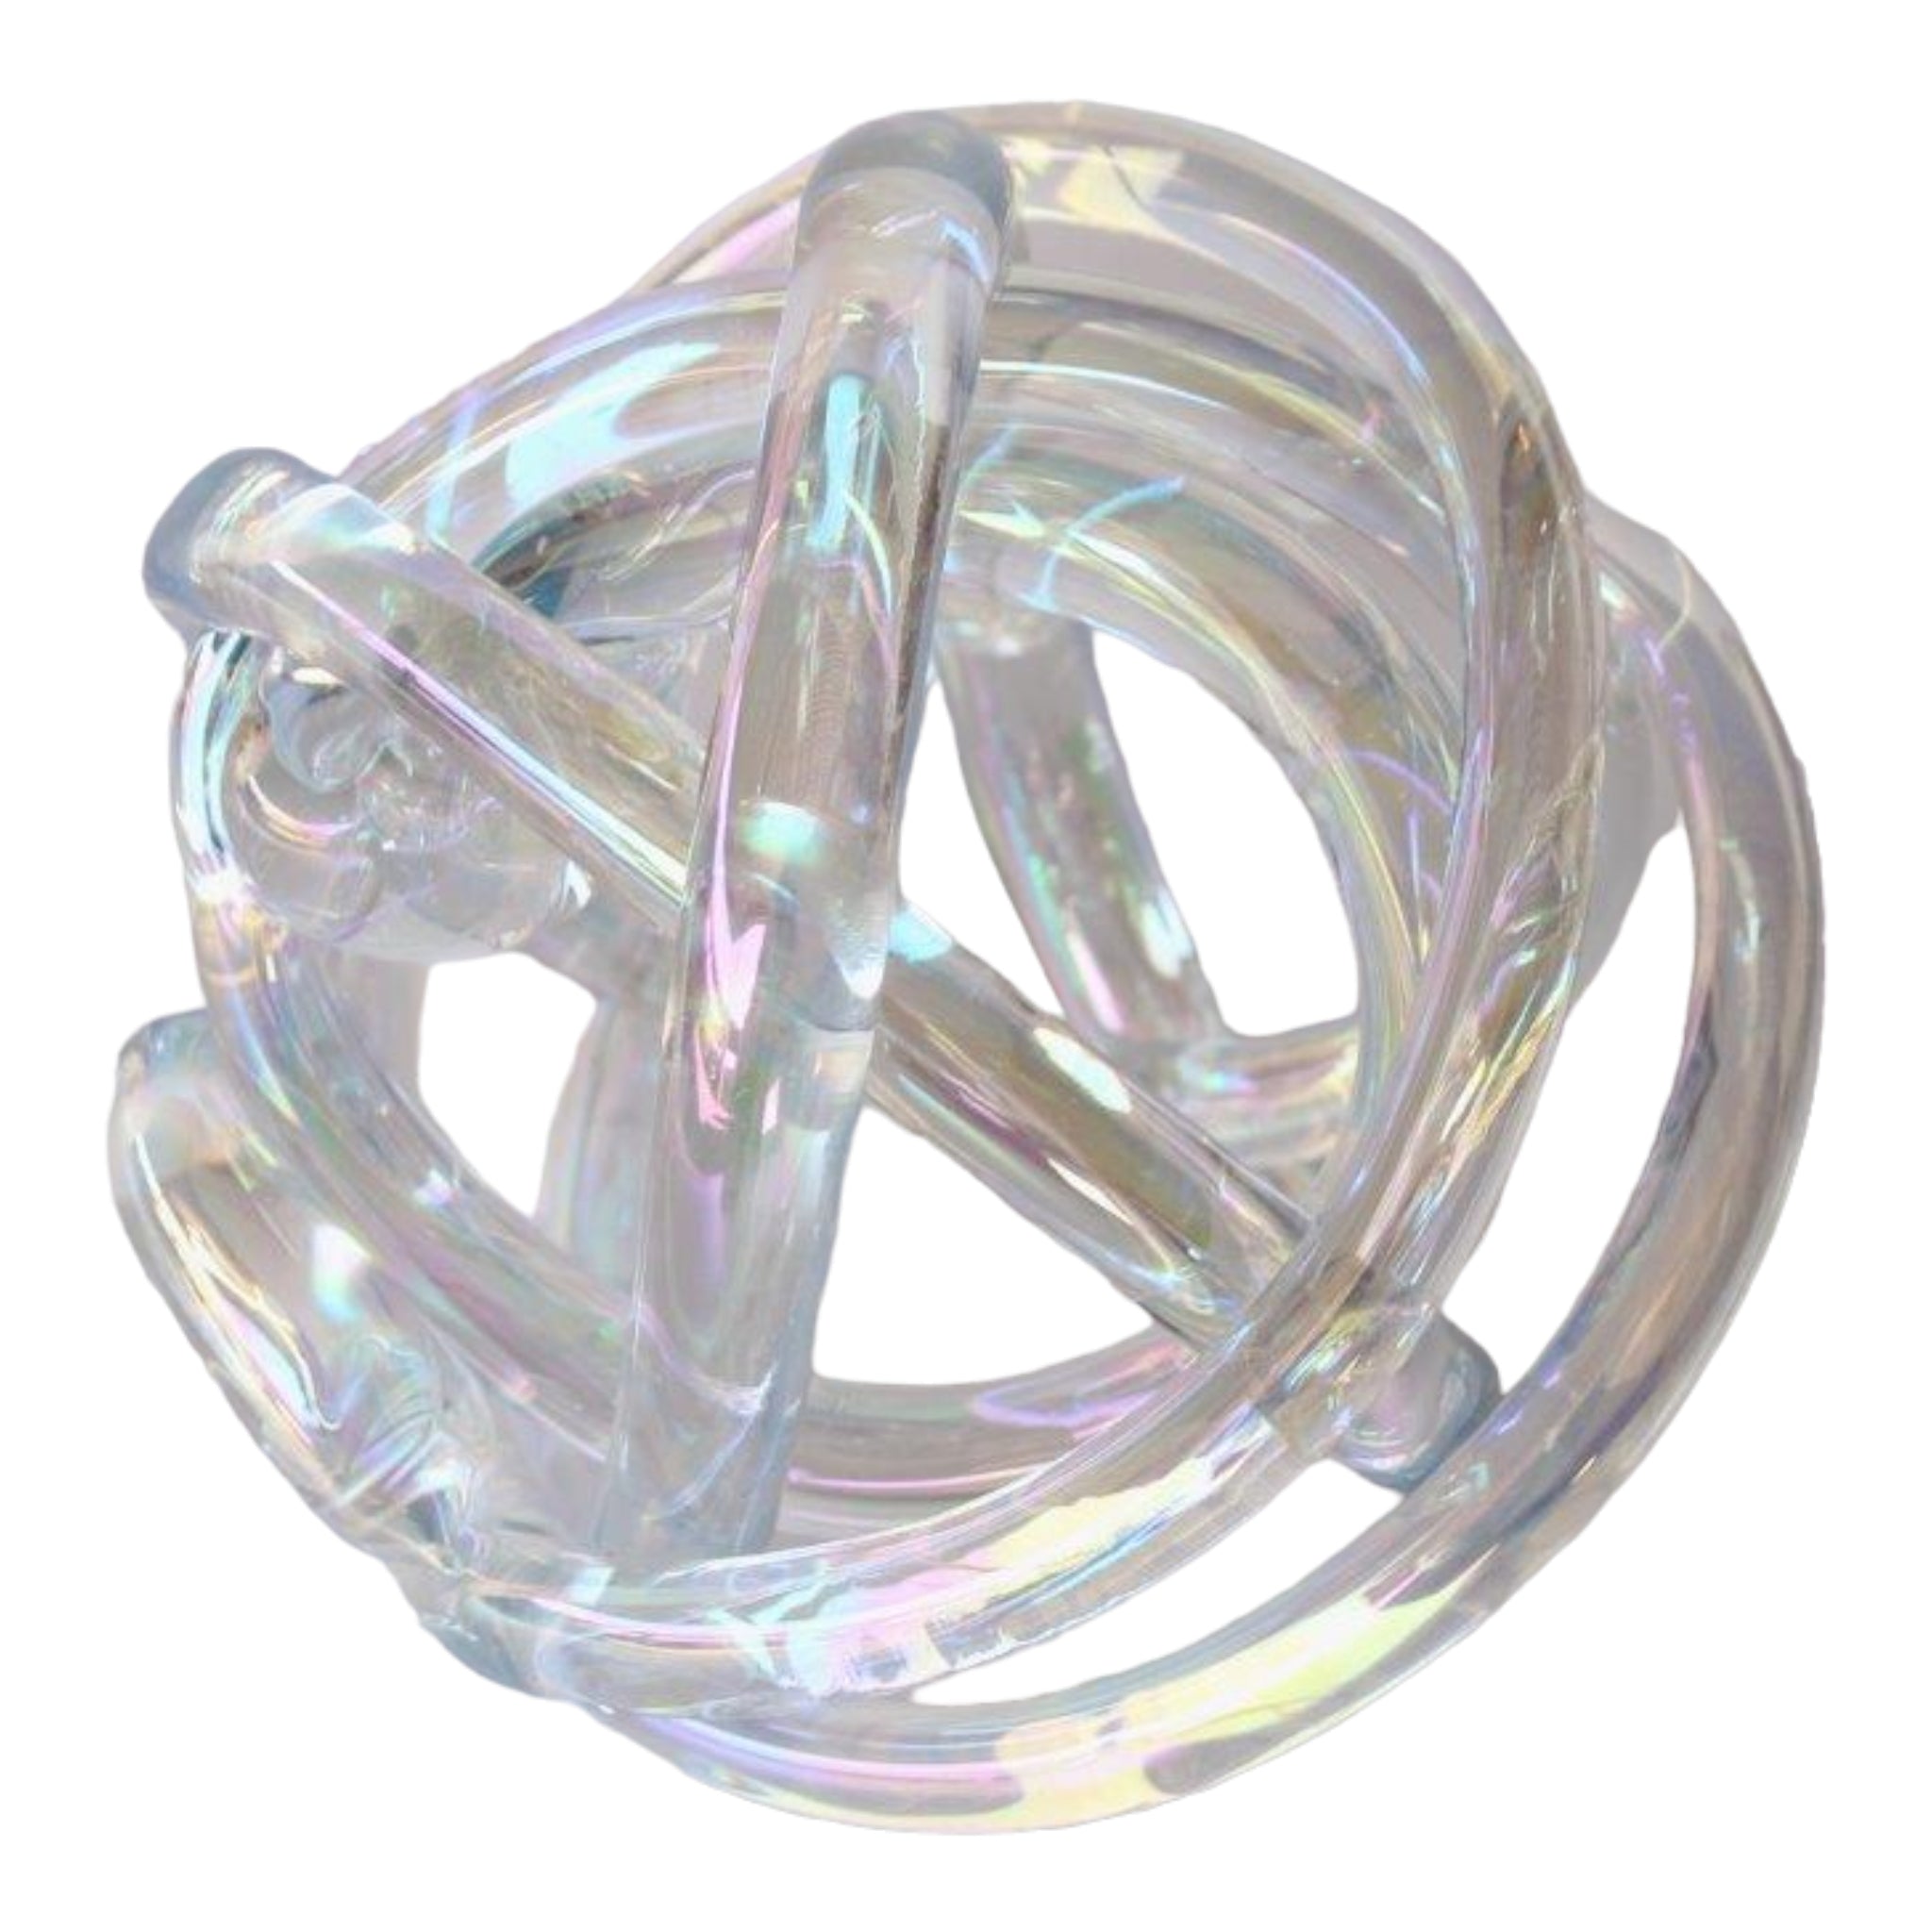 Florescent glass knot